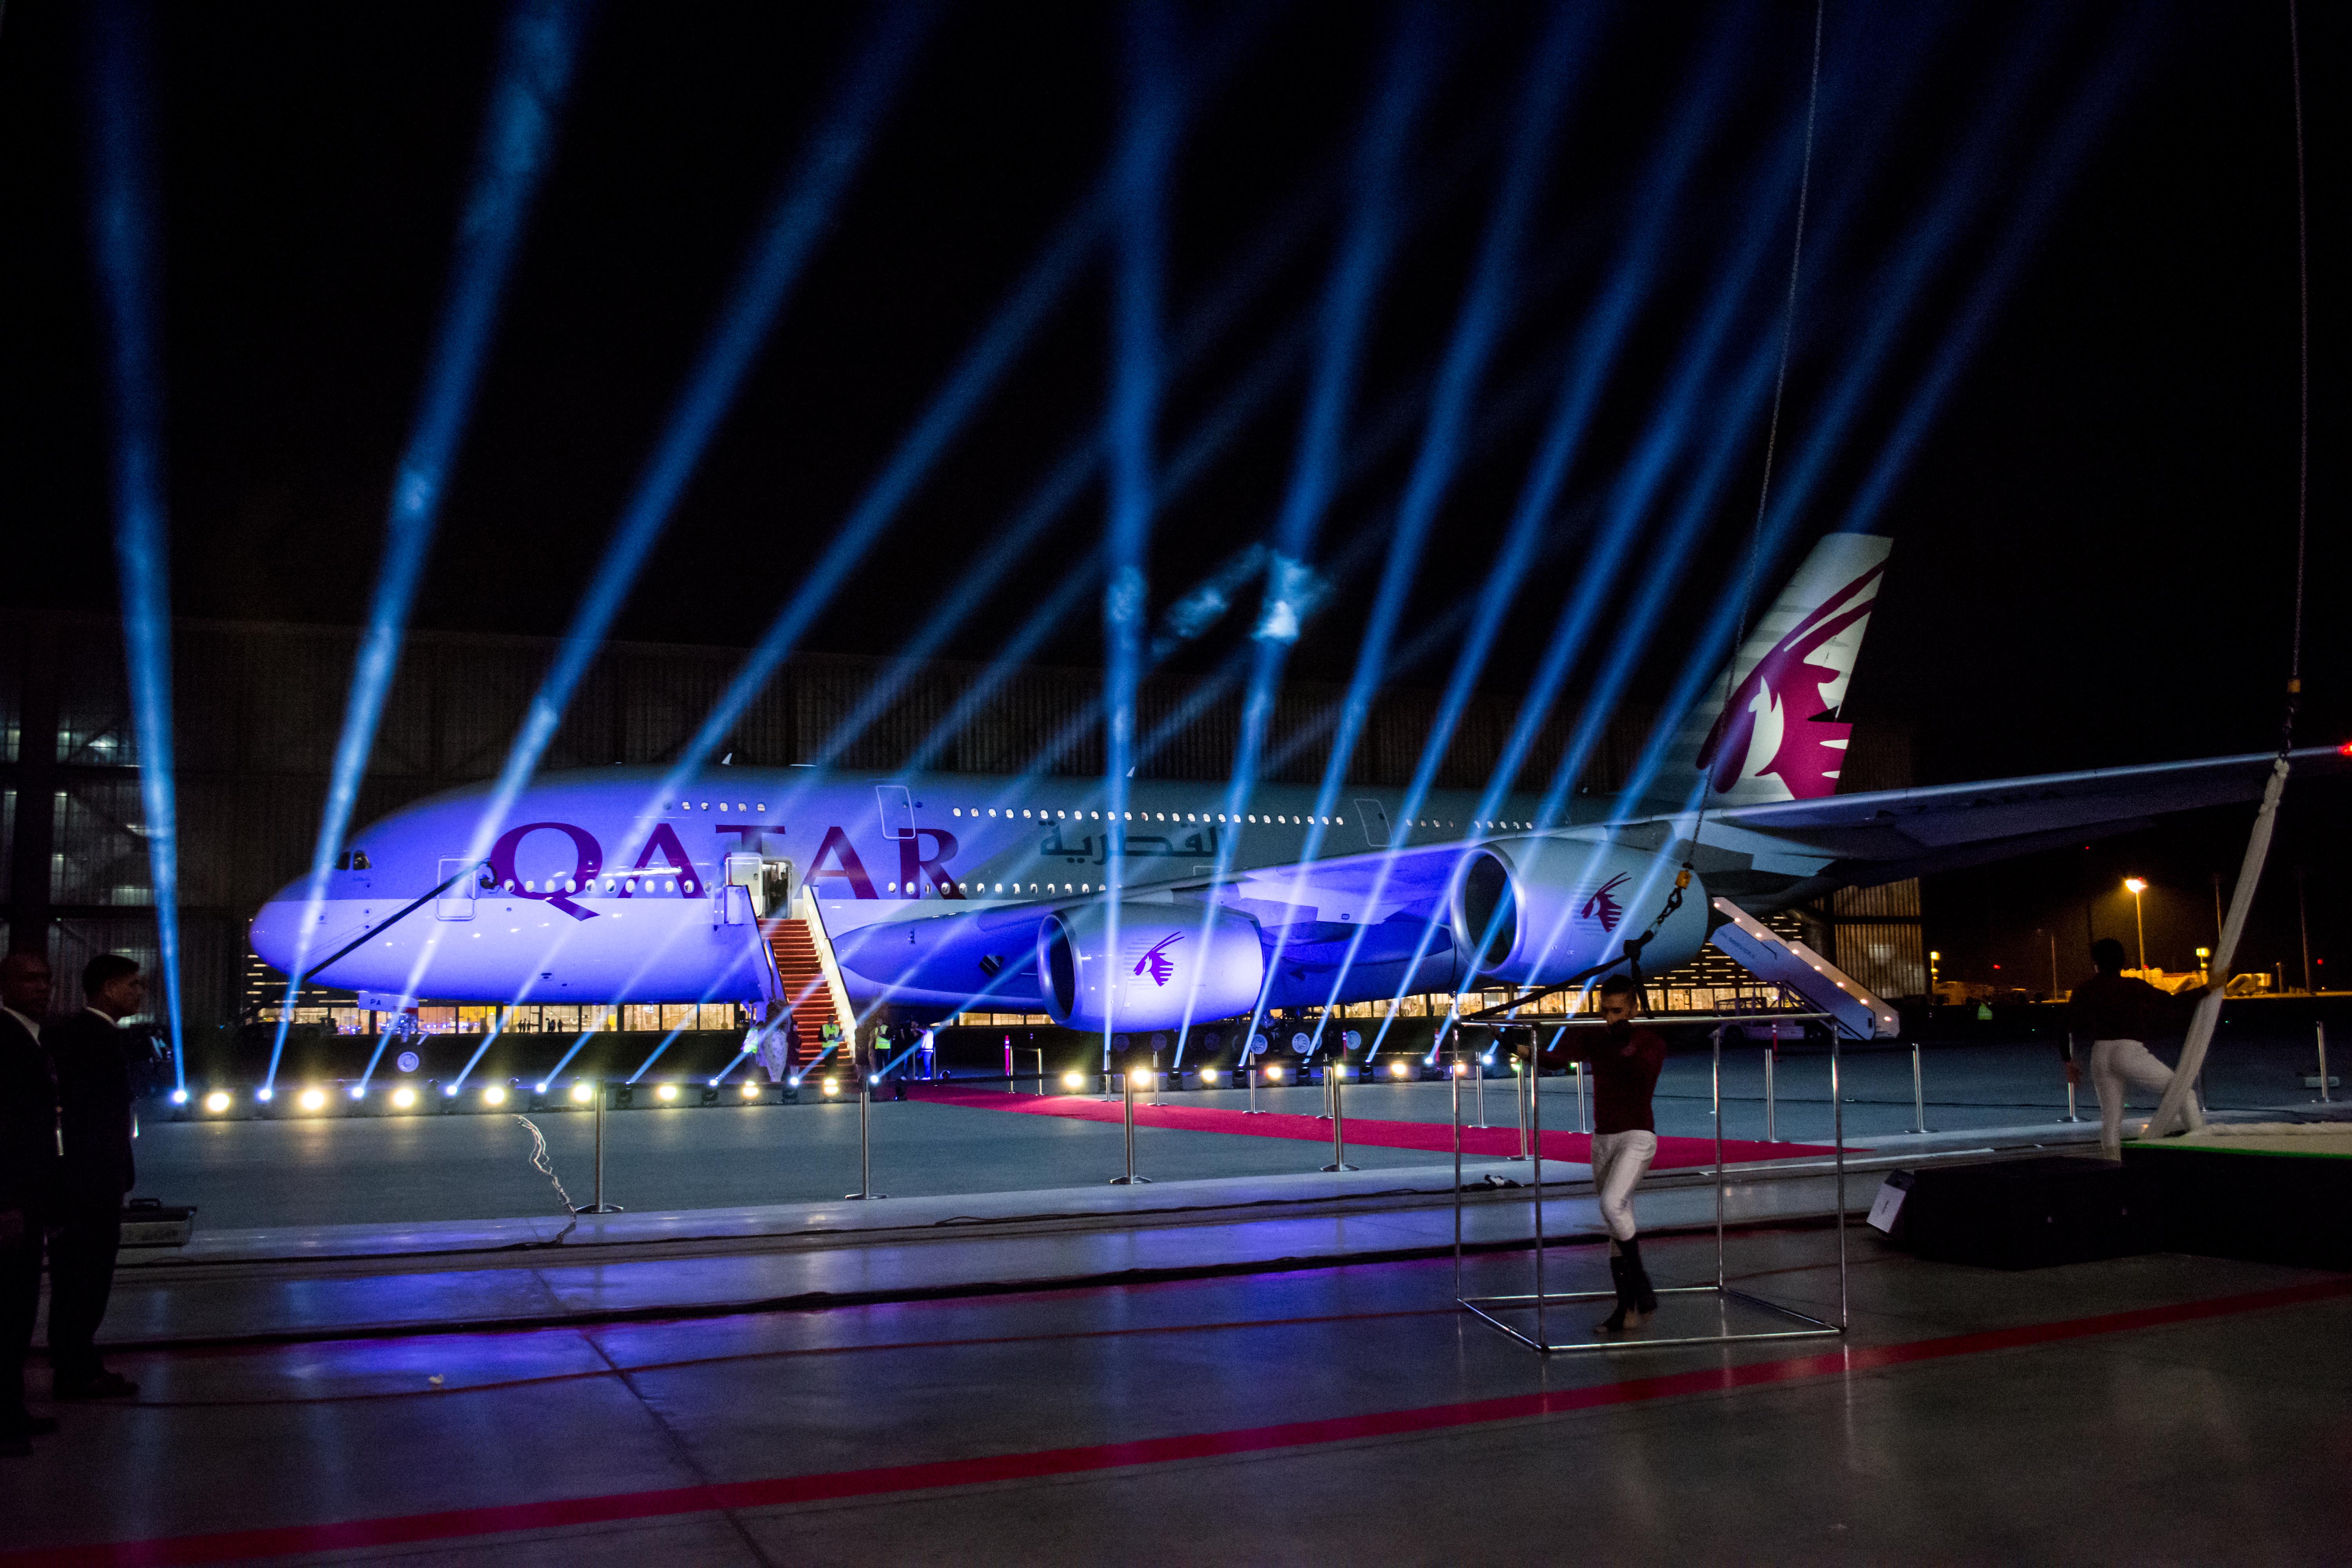 PHOTOS: Qatar Airways A380 makes Doha debut